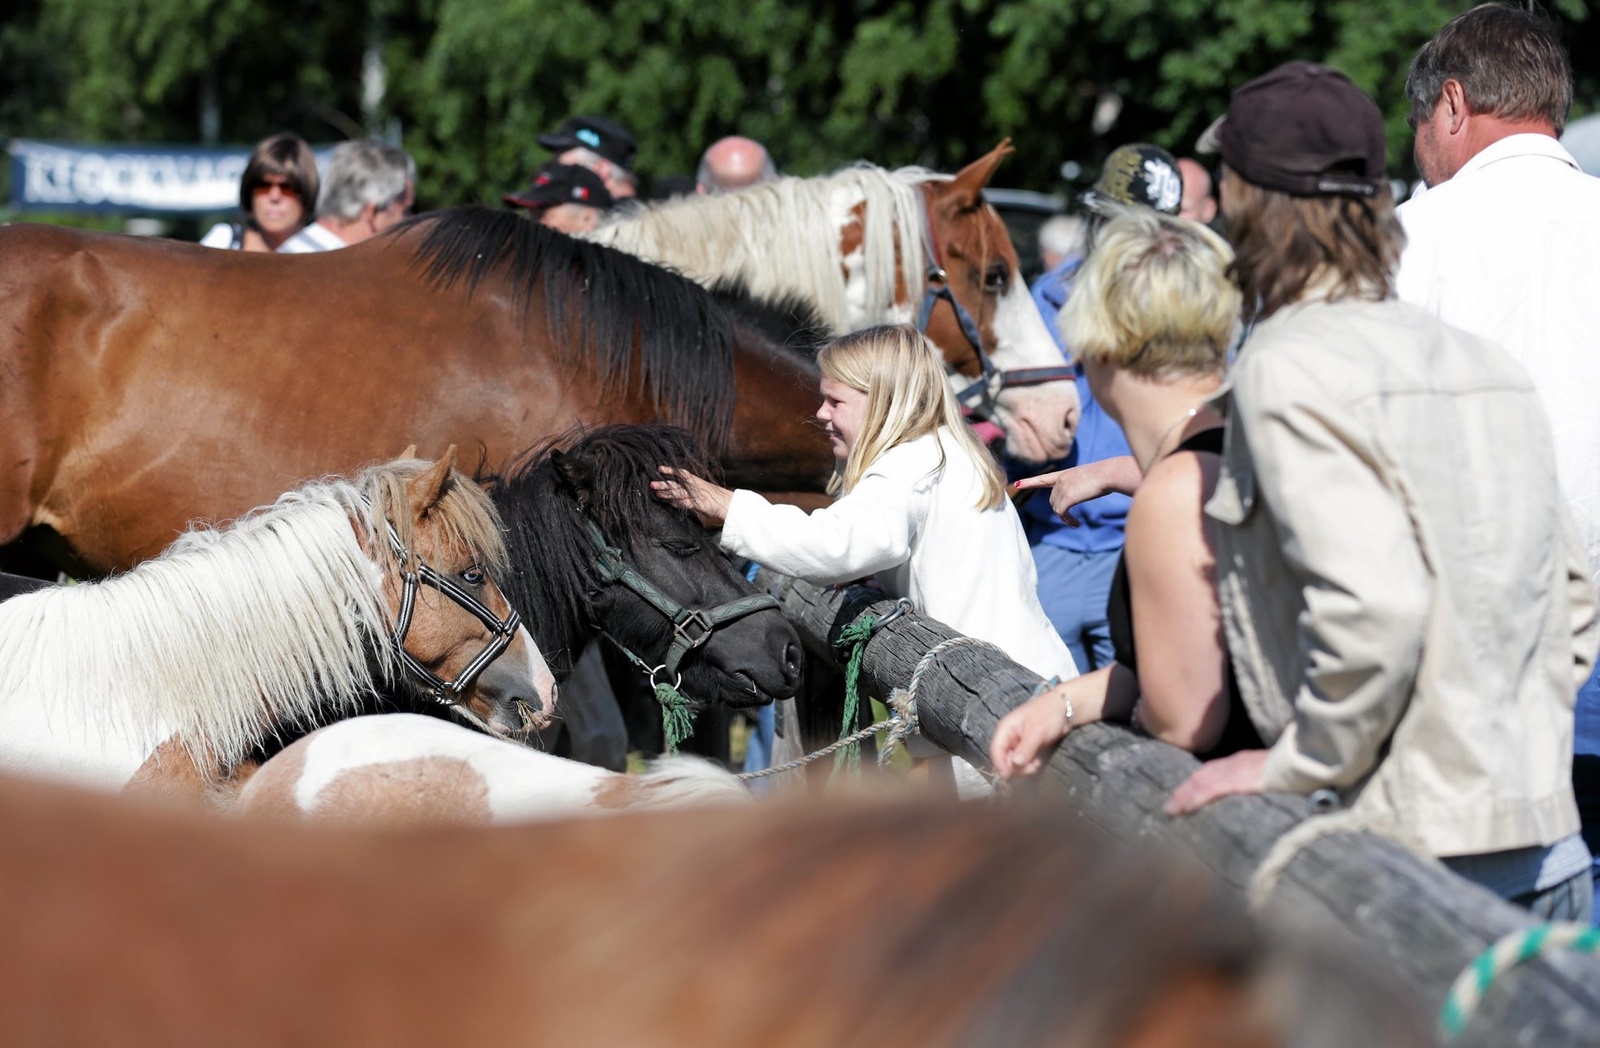 Djurmarknaden i Hästveda, med allt från hästar till smådjur, brukar locka många besökare. Foto: Stefan Sandström/arkiv